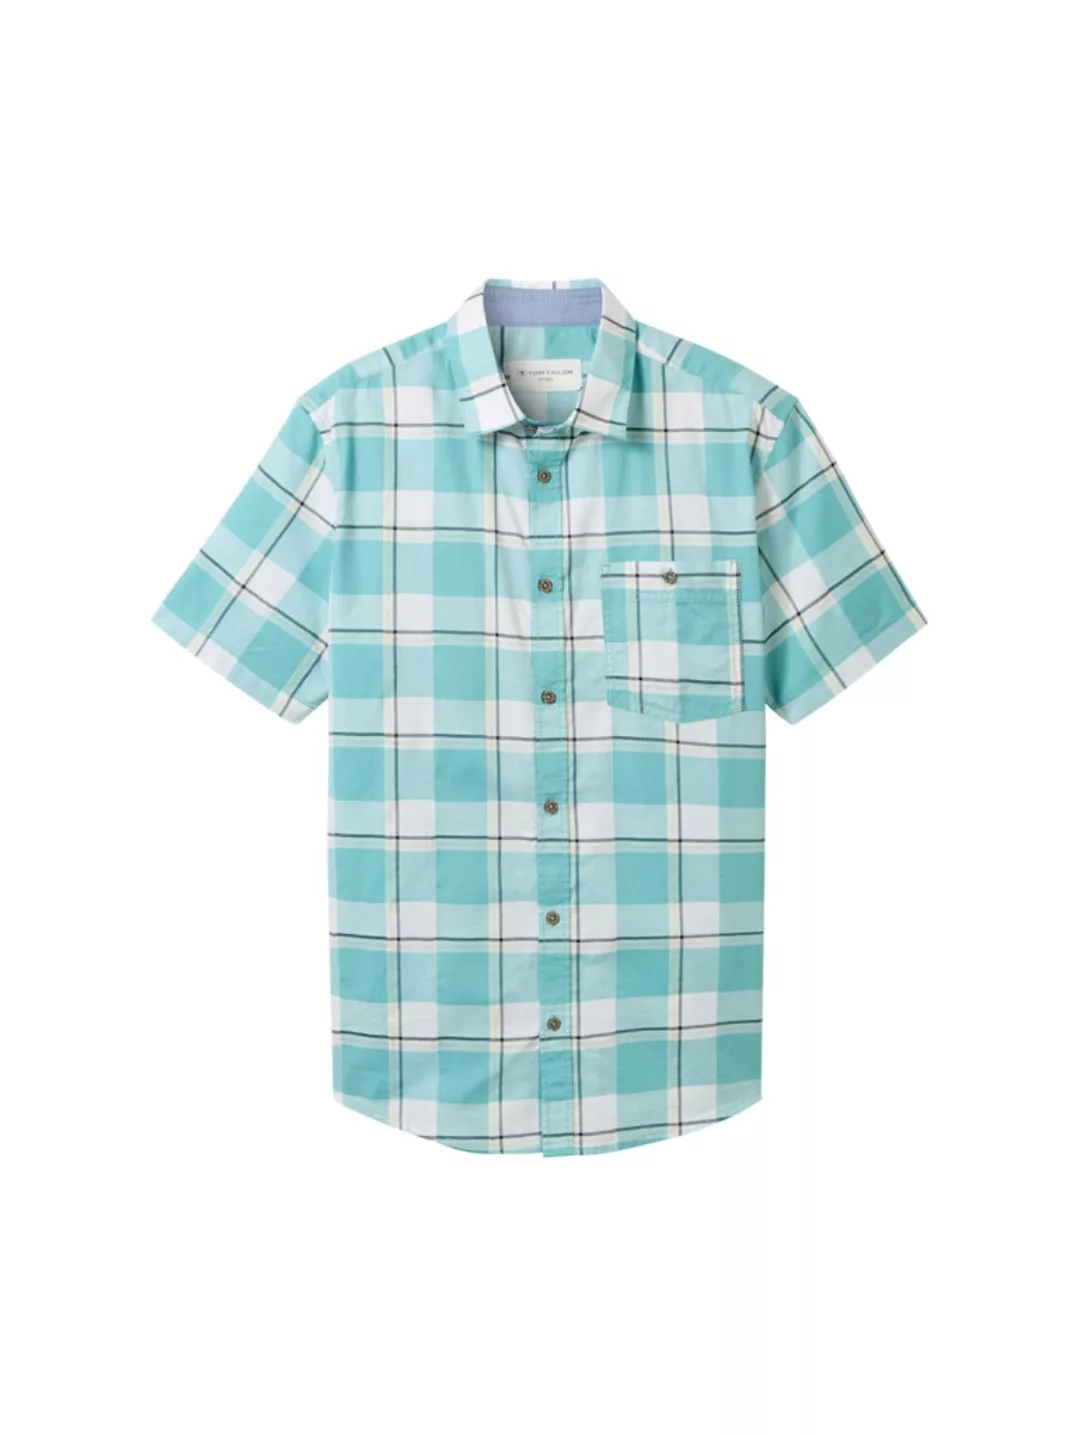 TOM TAILOR T-Shirt fitted checked slubyarn shirt günstig online kaufen